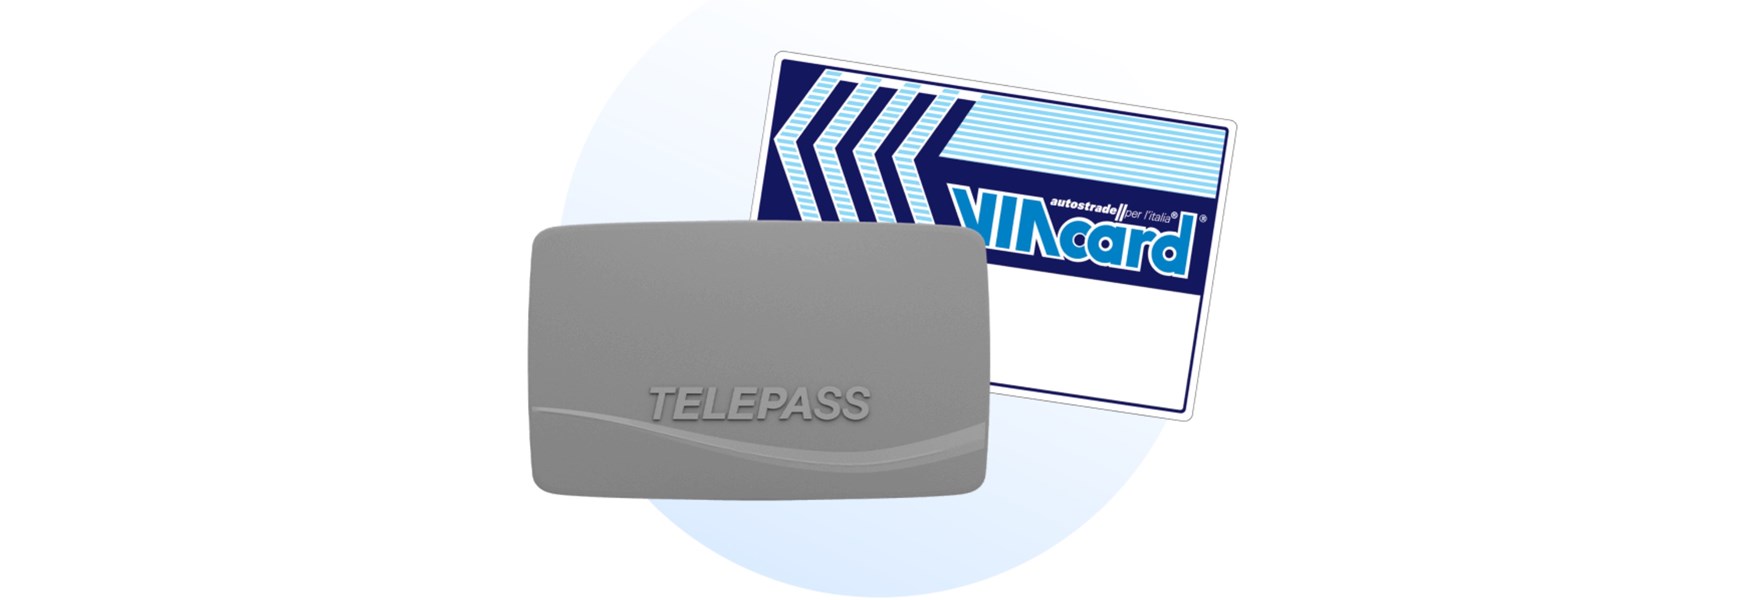 Dc Offerta Dispositivo Telepass Con Viacard 